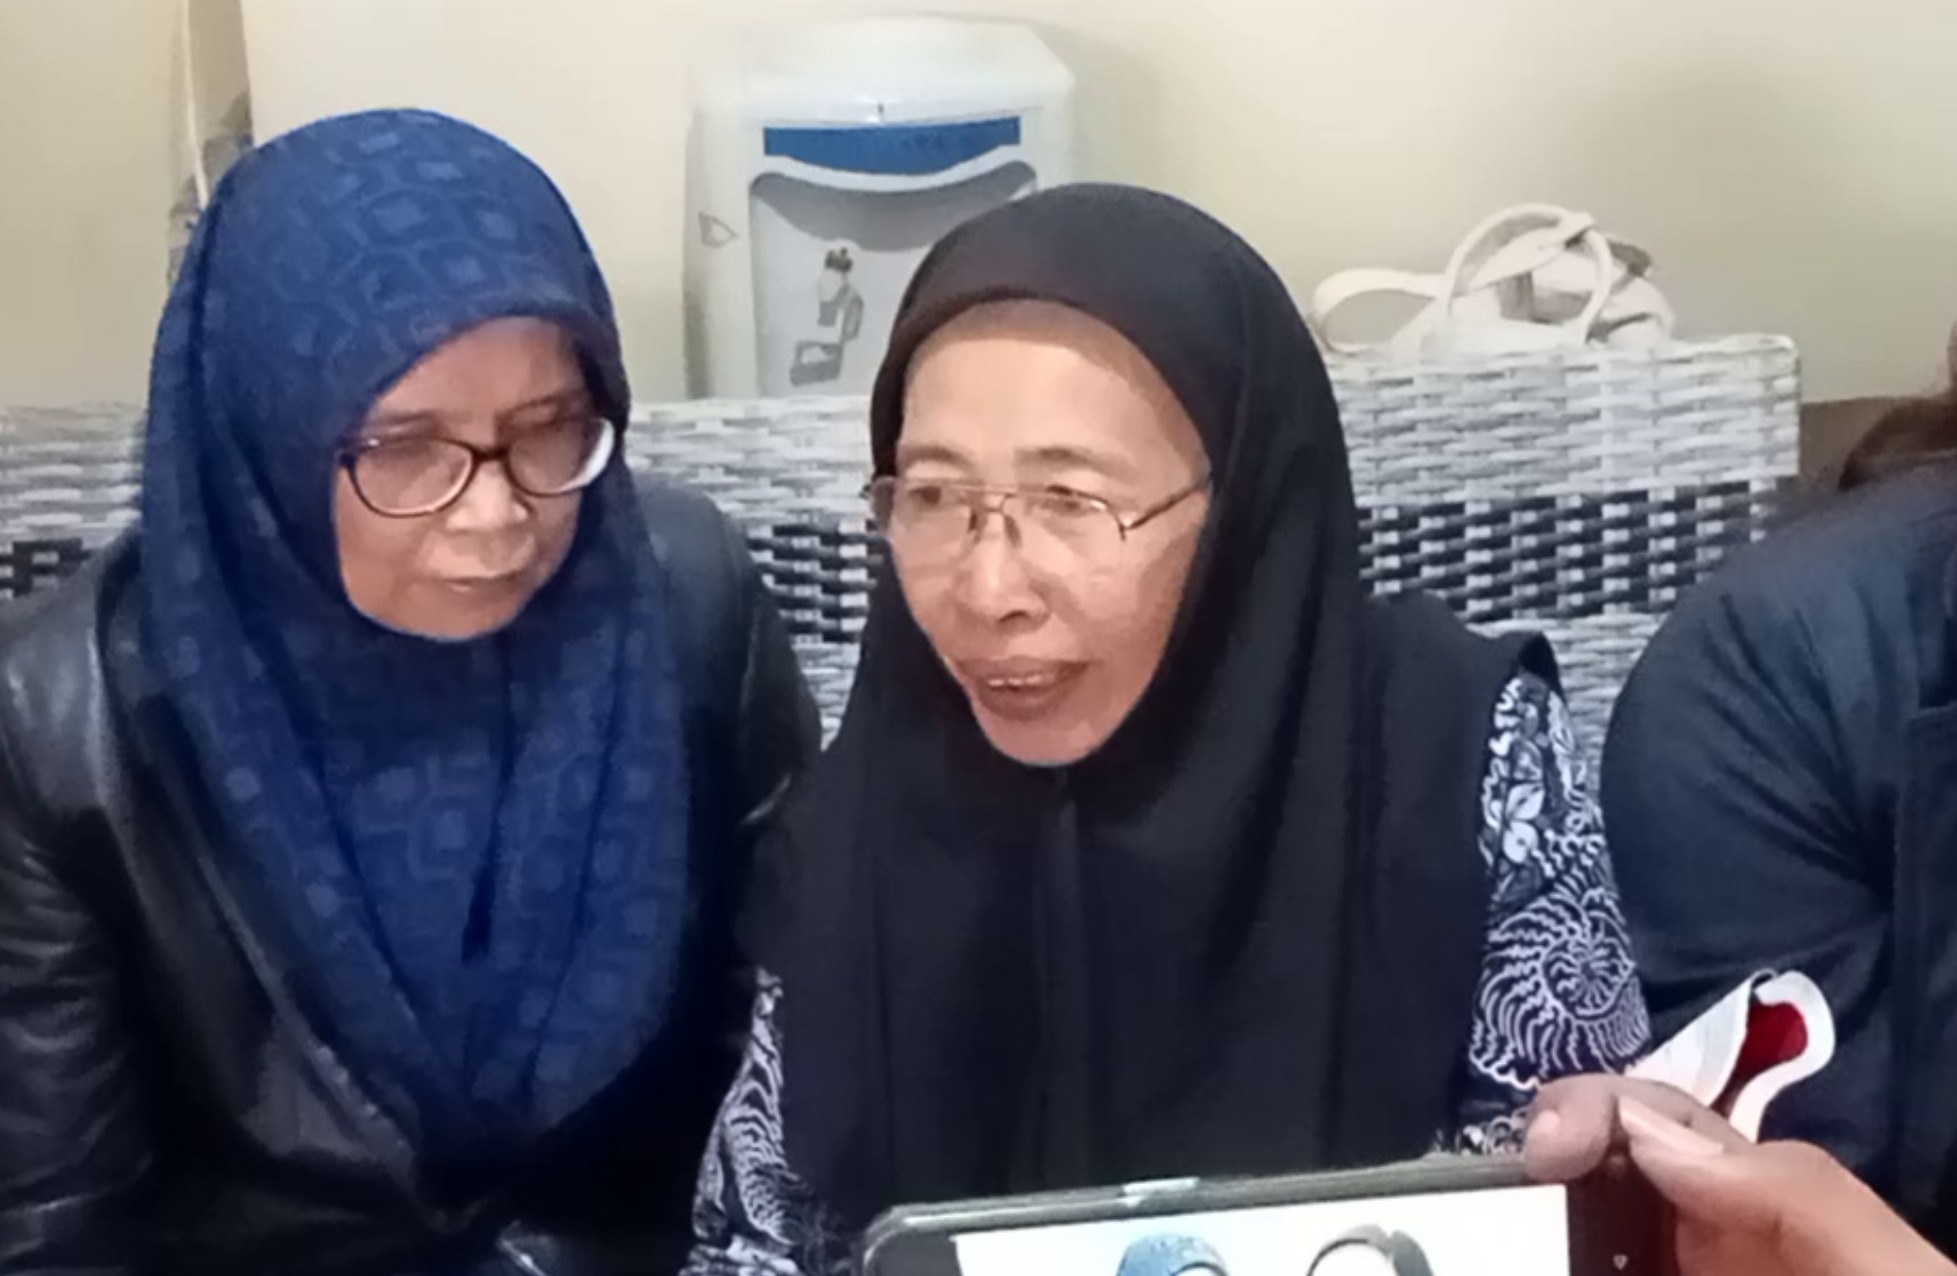 Pengakuan Rivaldi Terdakwa Kasus Vina Cirebon, Ditangkap di Depan Grage Mall, Dipaksa Mengaku sebagai Andika